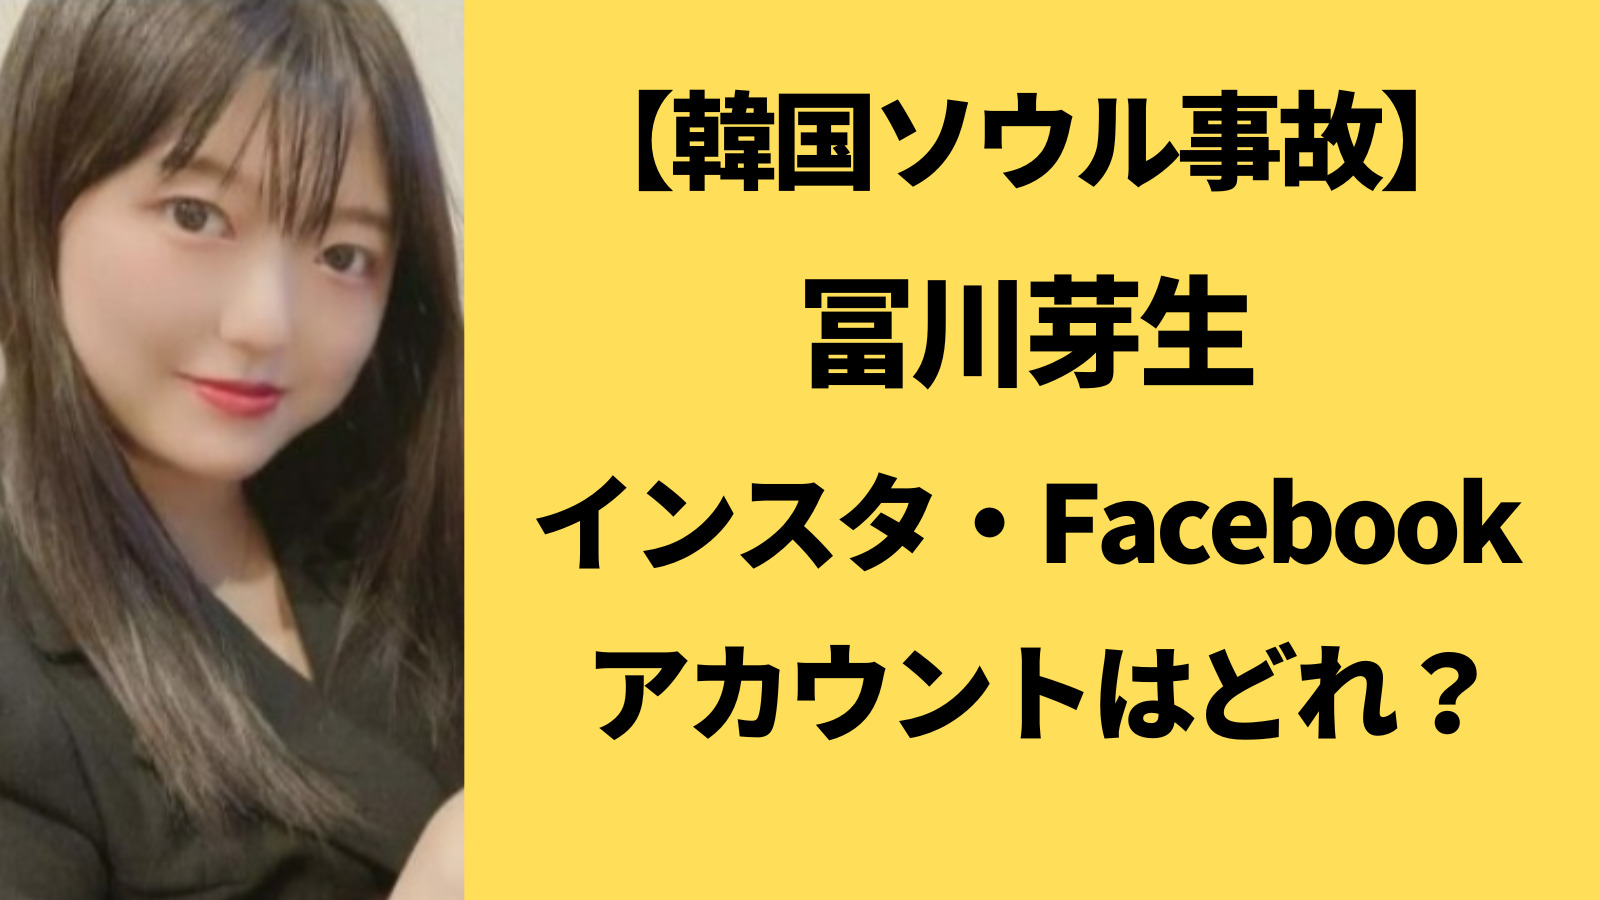 冨川芽生のインスタとFacebookを特定！モデルでかわいいと評判だった！